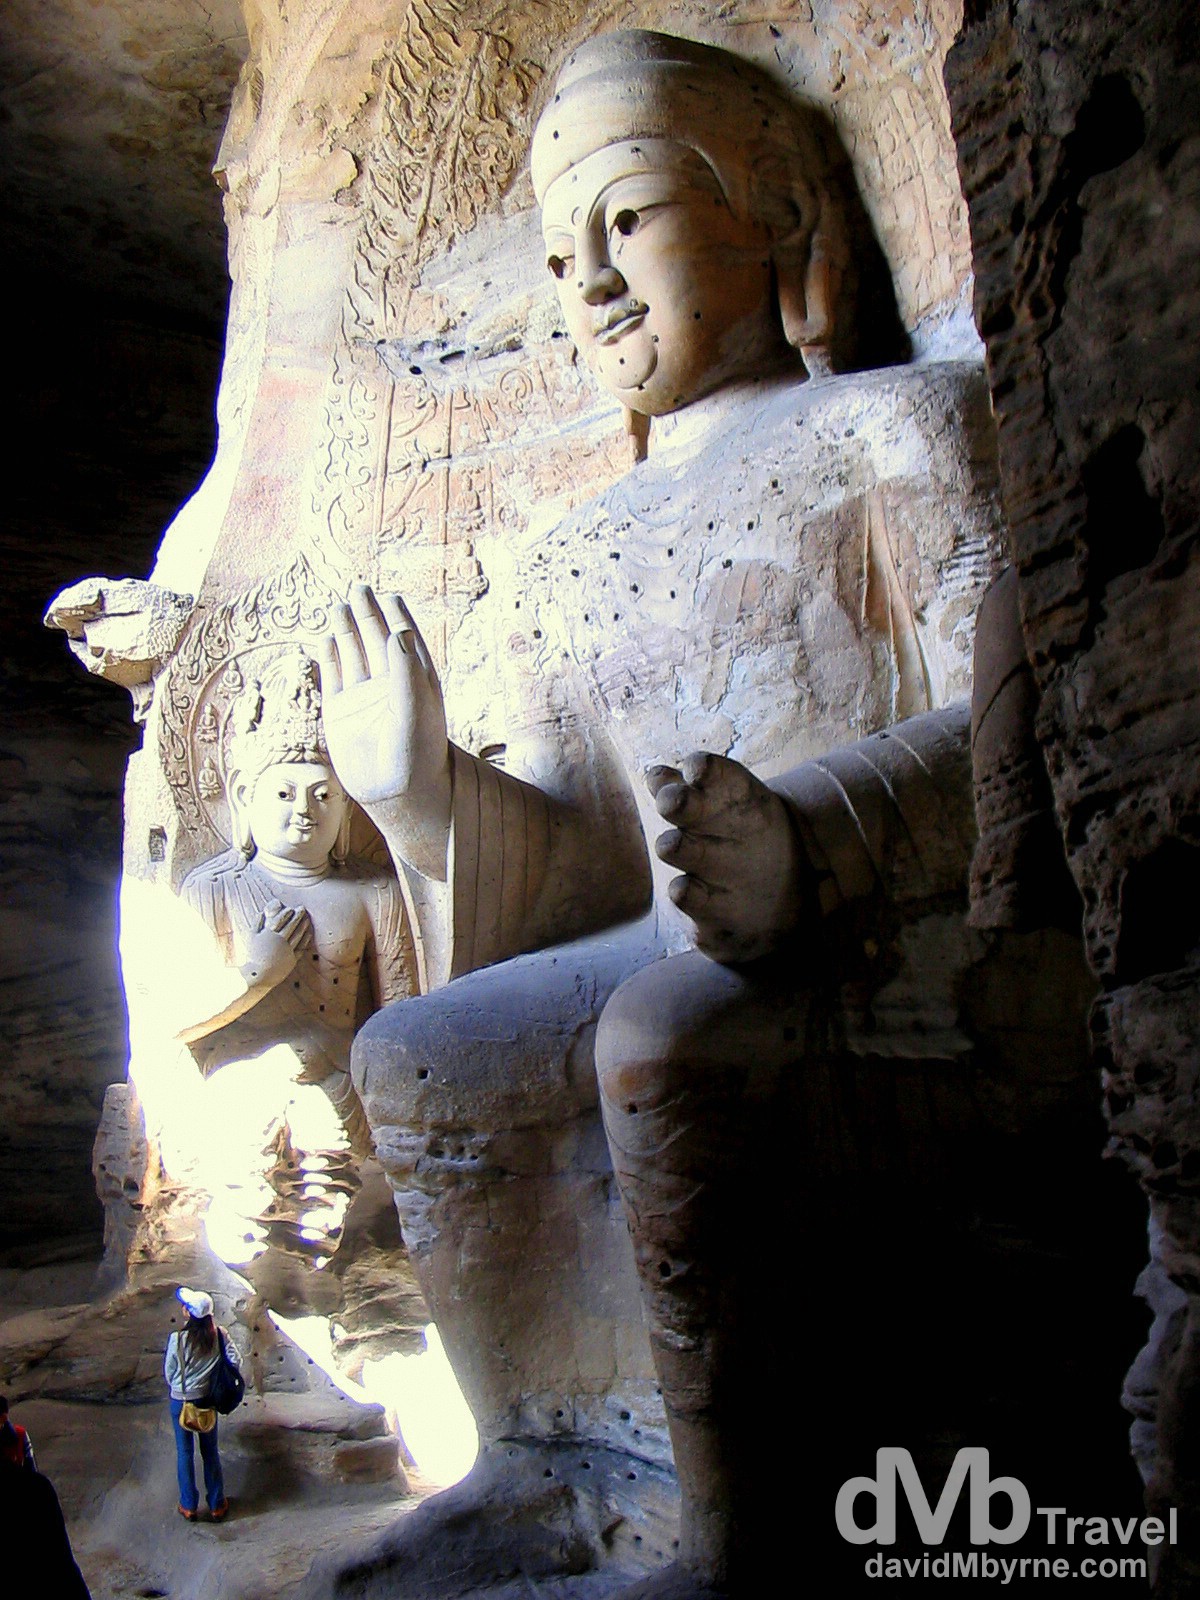 Buddha & Attendants Of Cave 3, Yungang Caves, Datong, Shanxi Provence, China. October 2nd 2004.